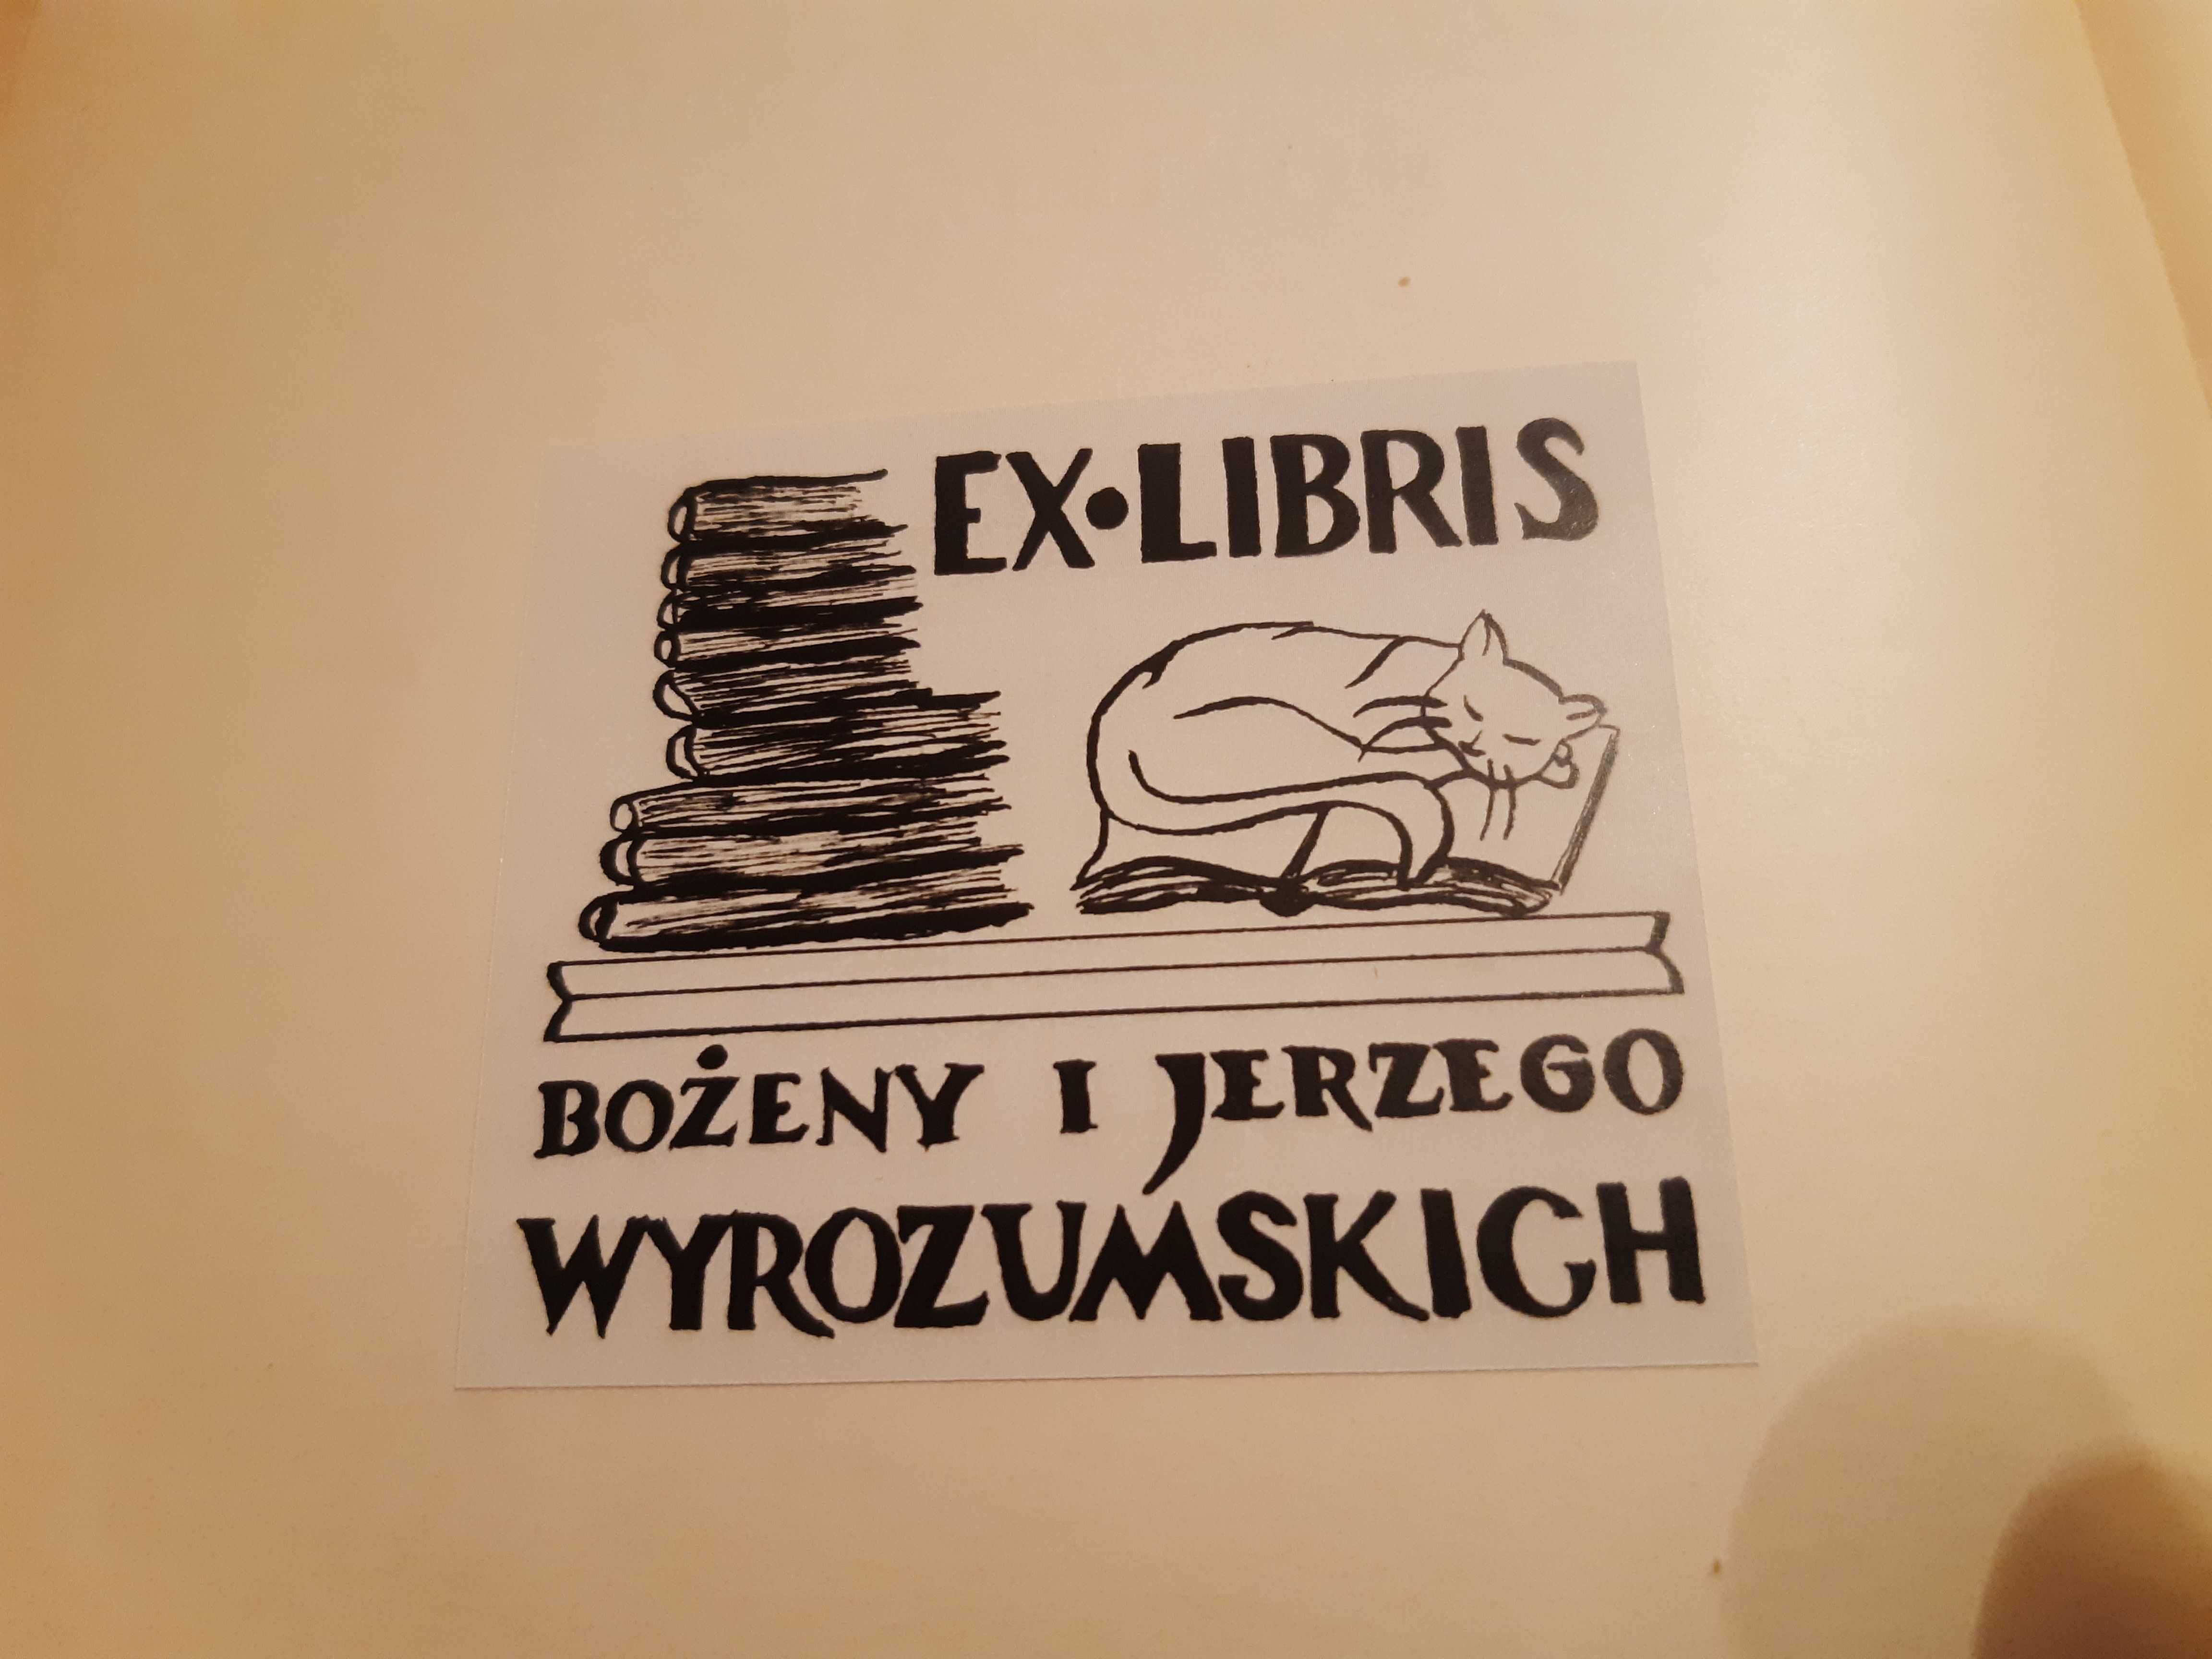 NOWACKI Księga uposażenia diecezji poznańskiej Ex Libris WYROZUMSKI J.